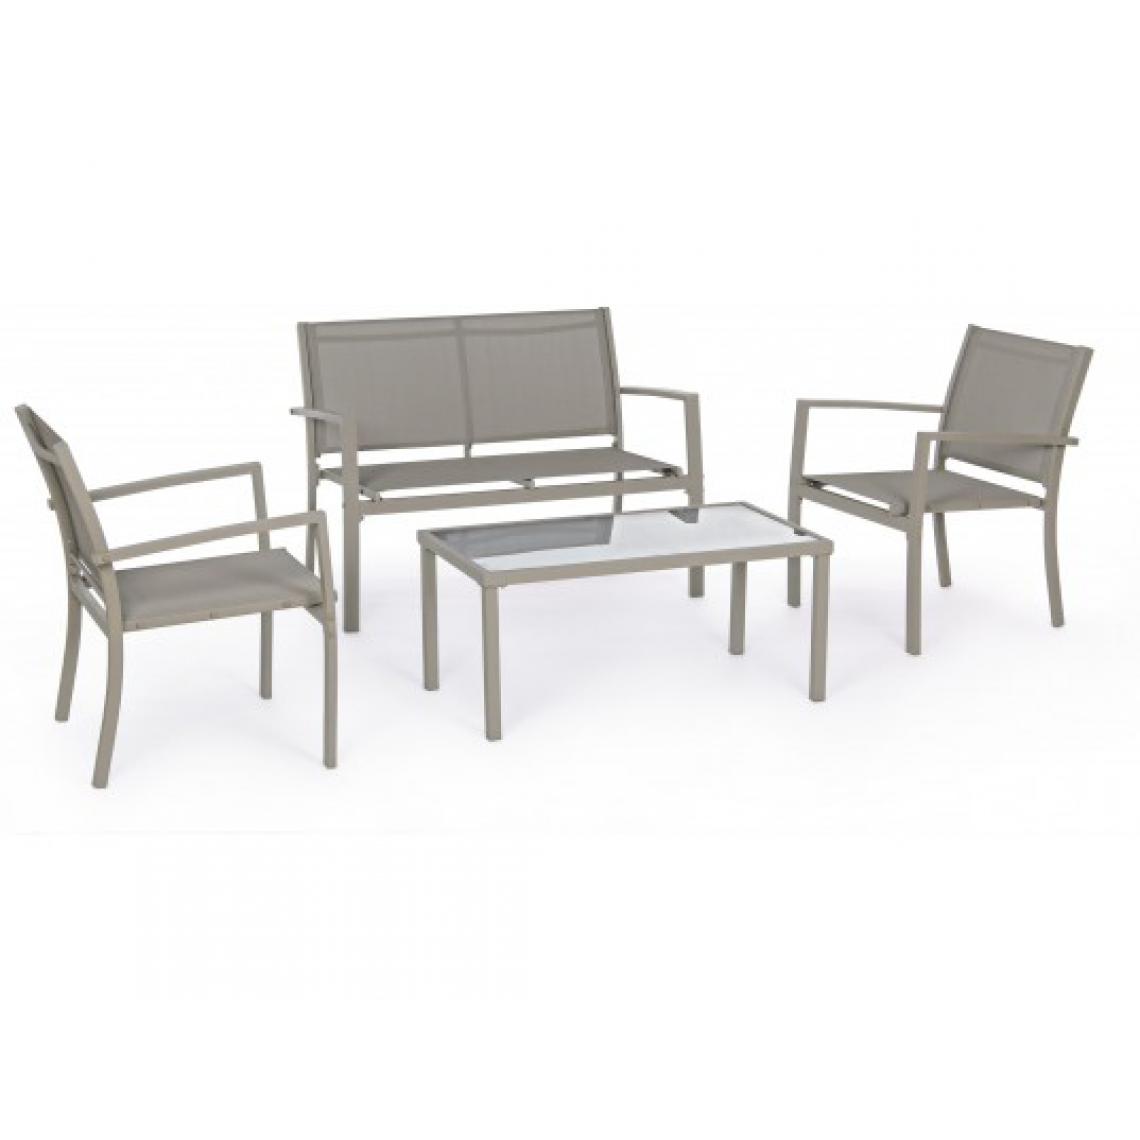 Bizzotto - Canapé extérieur Trent canapé + 2 fauteuils + table taupe - Fauteuil de jardin